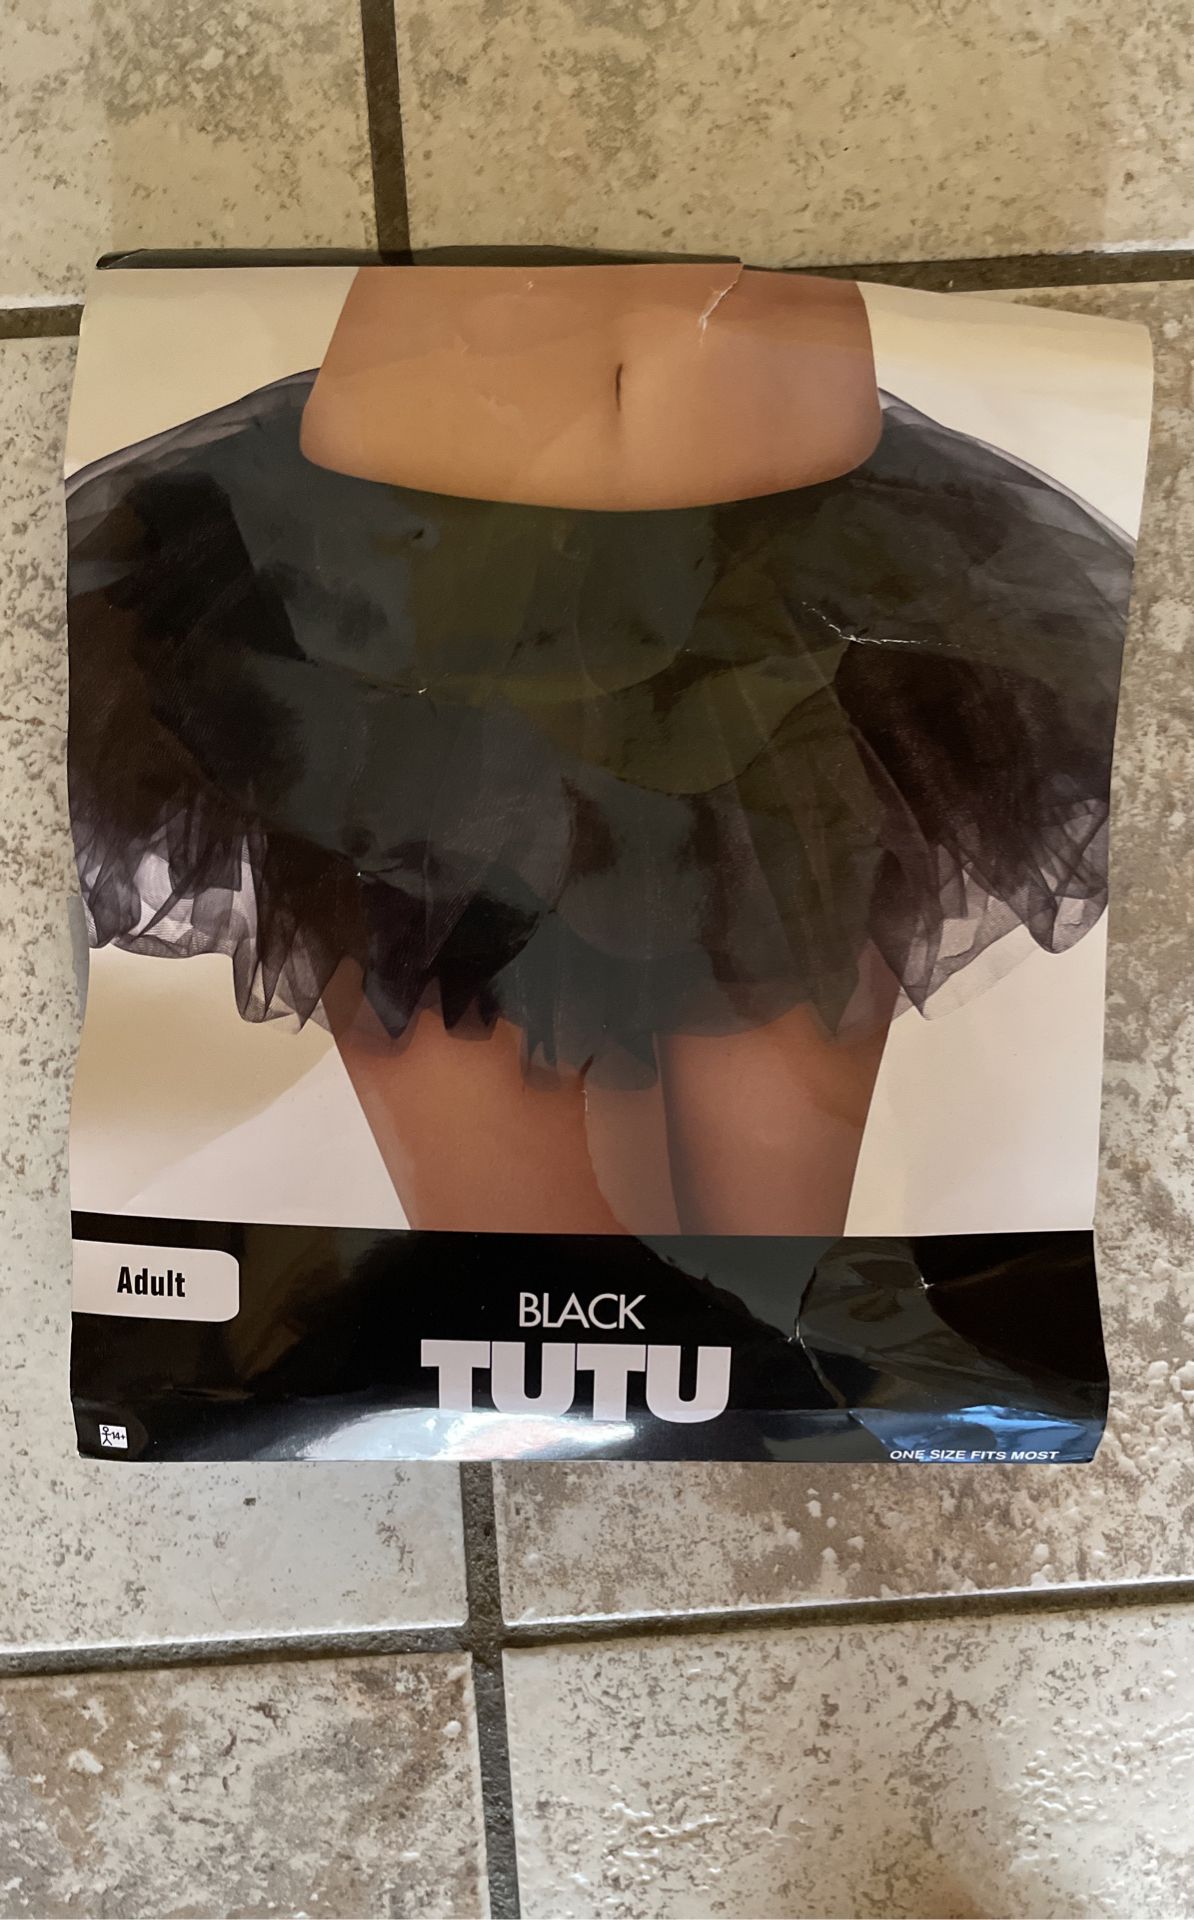 Black Tutu Skirt Adult Halloween Costume 